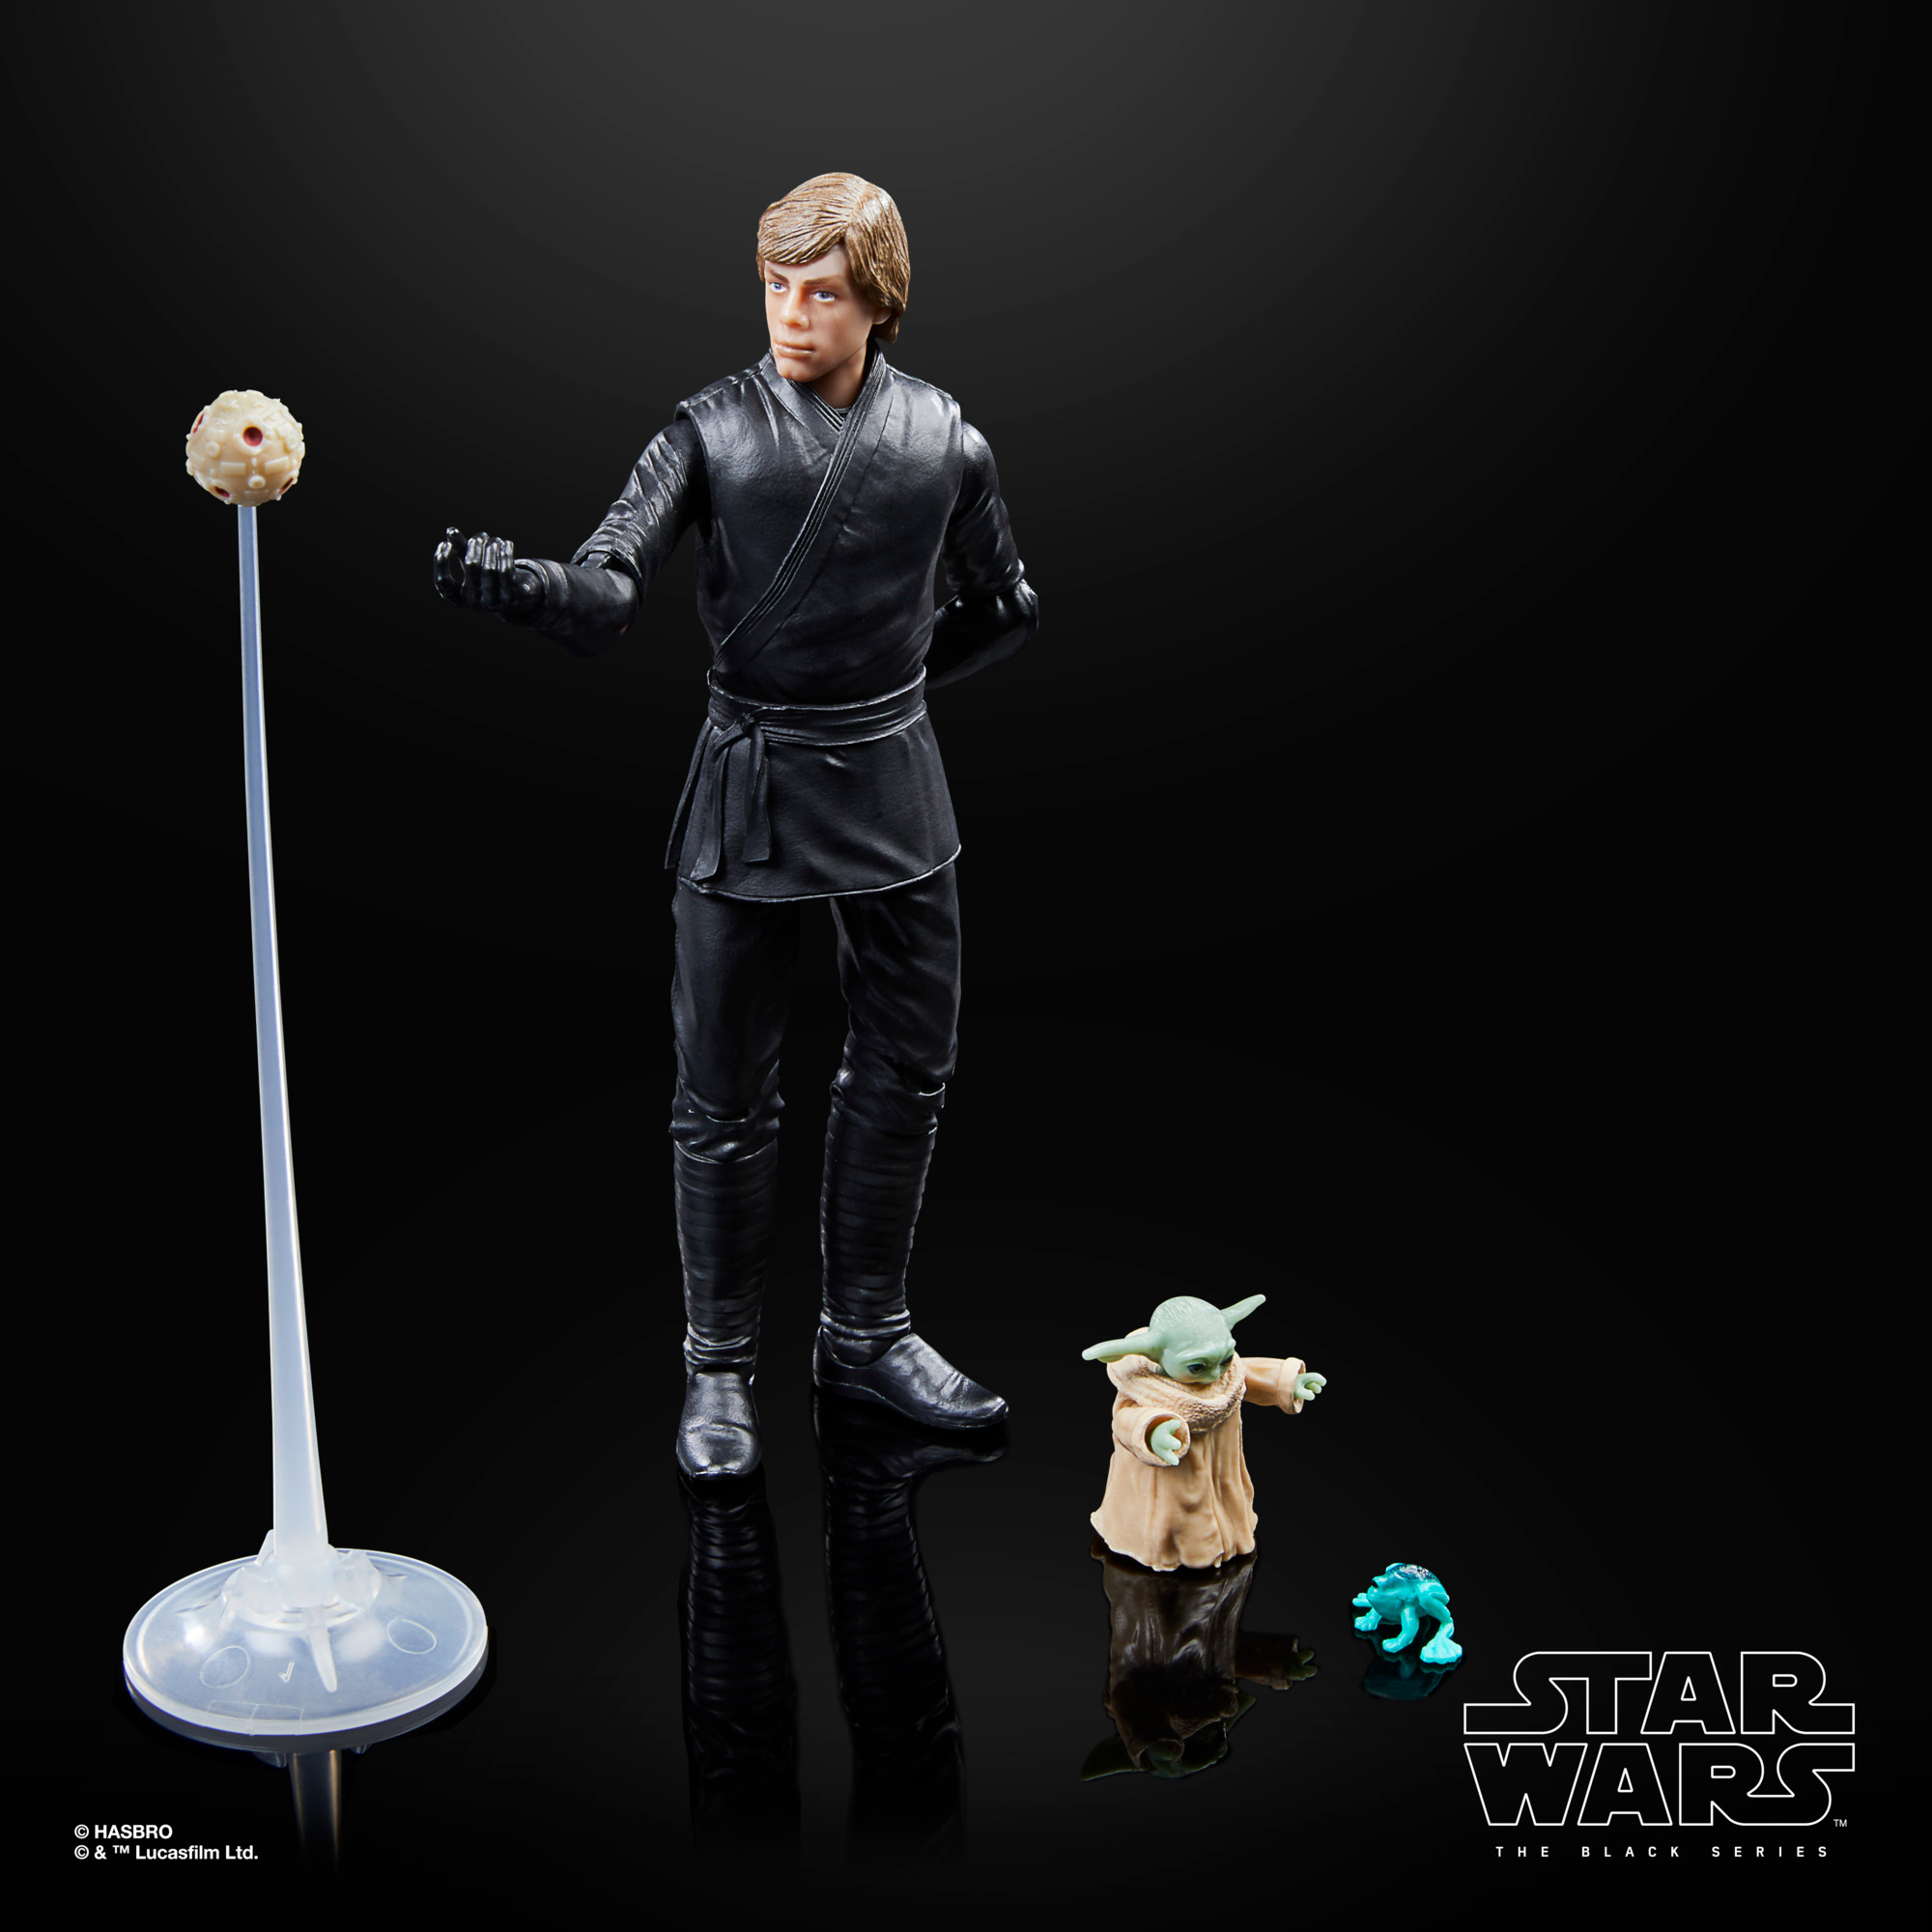 Hasbro Press Release - TBS 6-Inch Luke Skywalker & Grogu